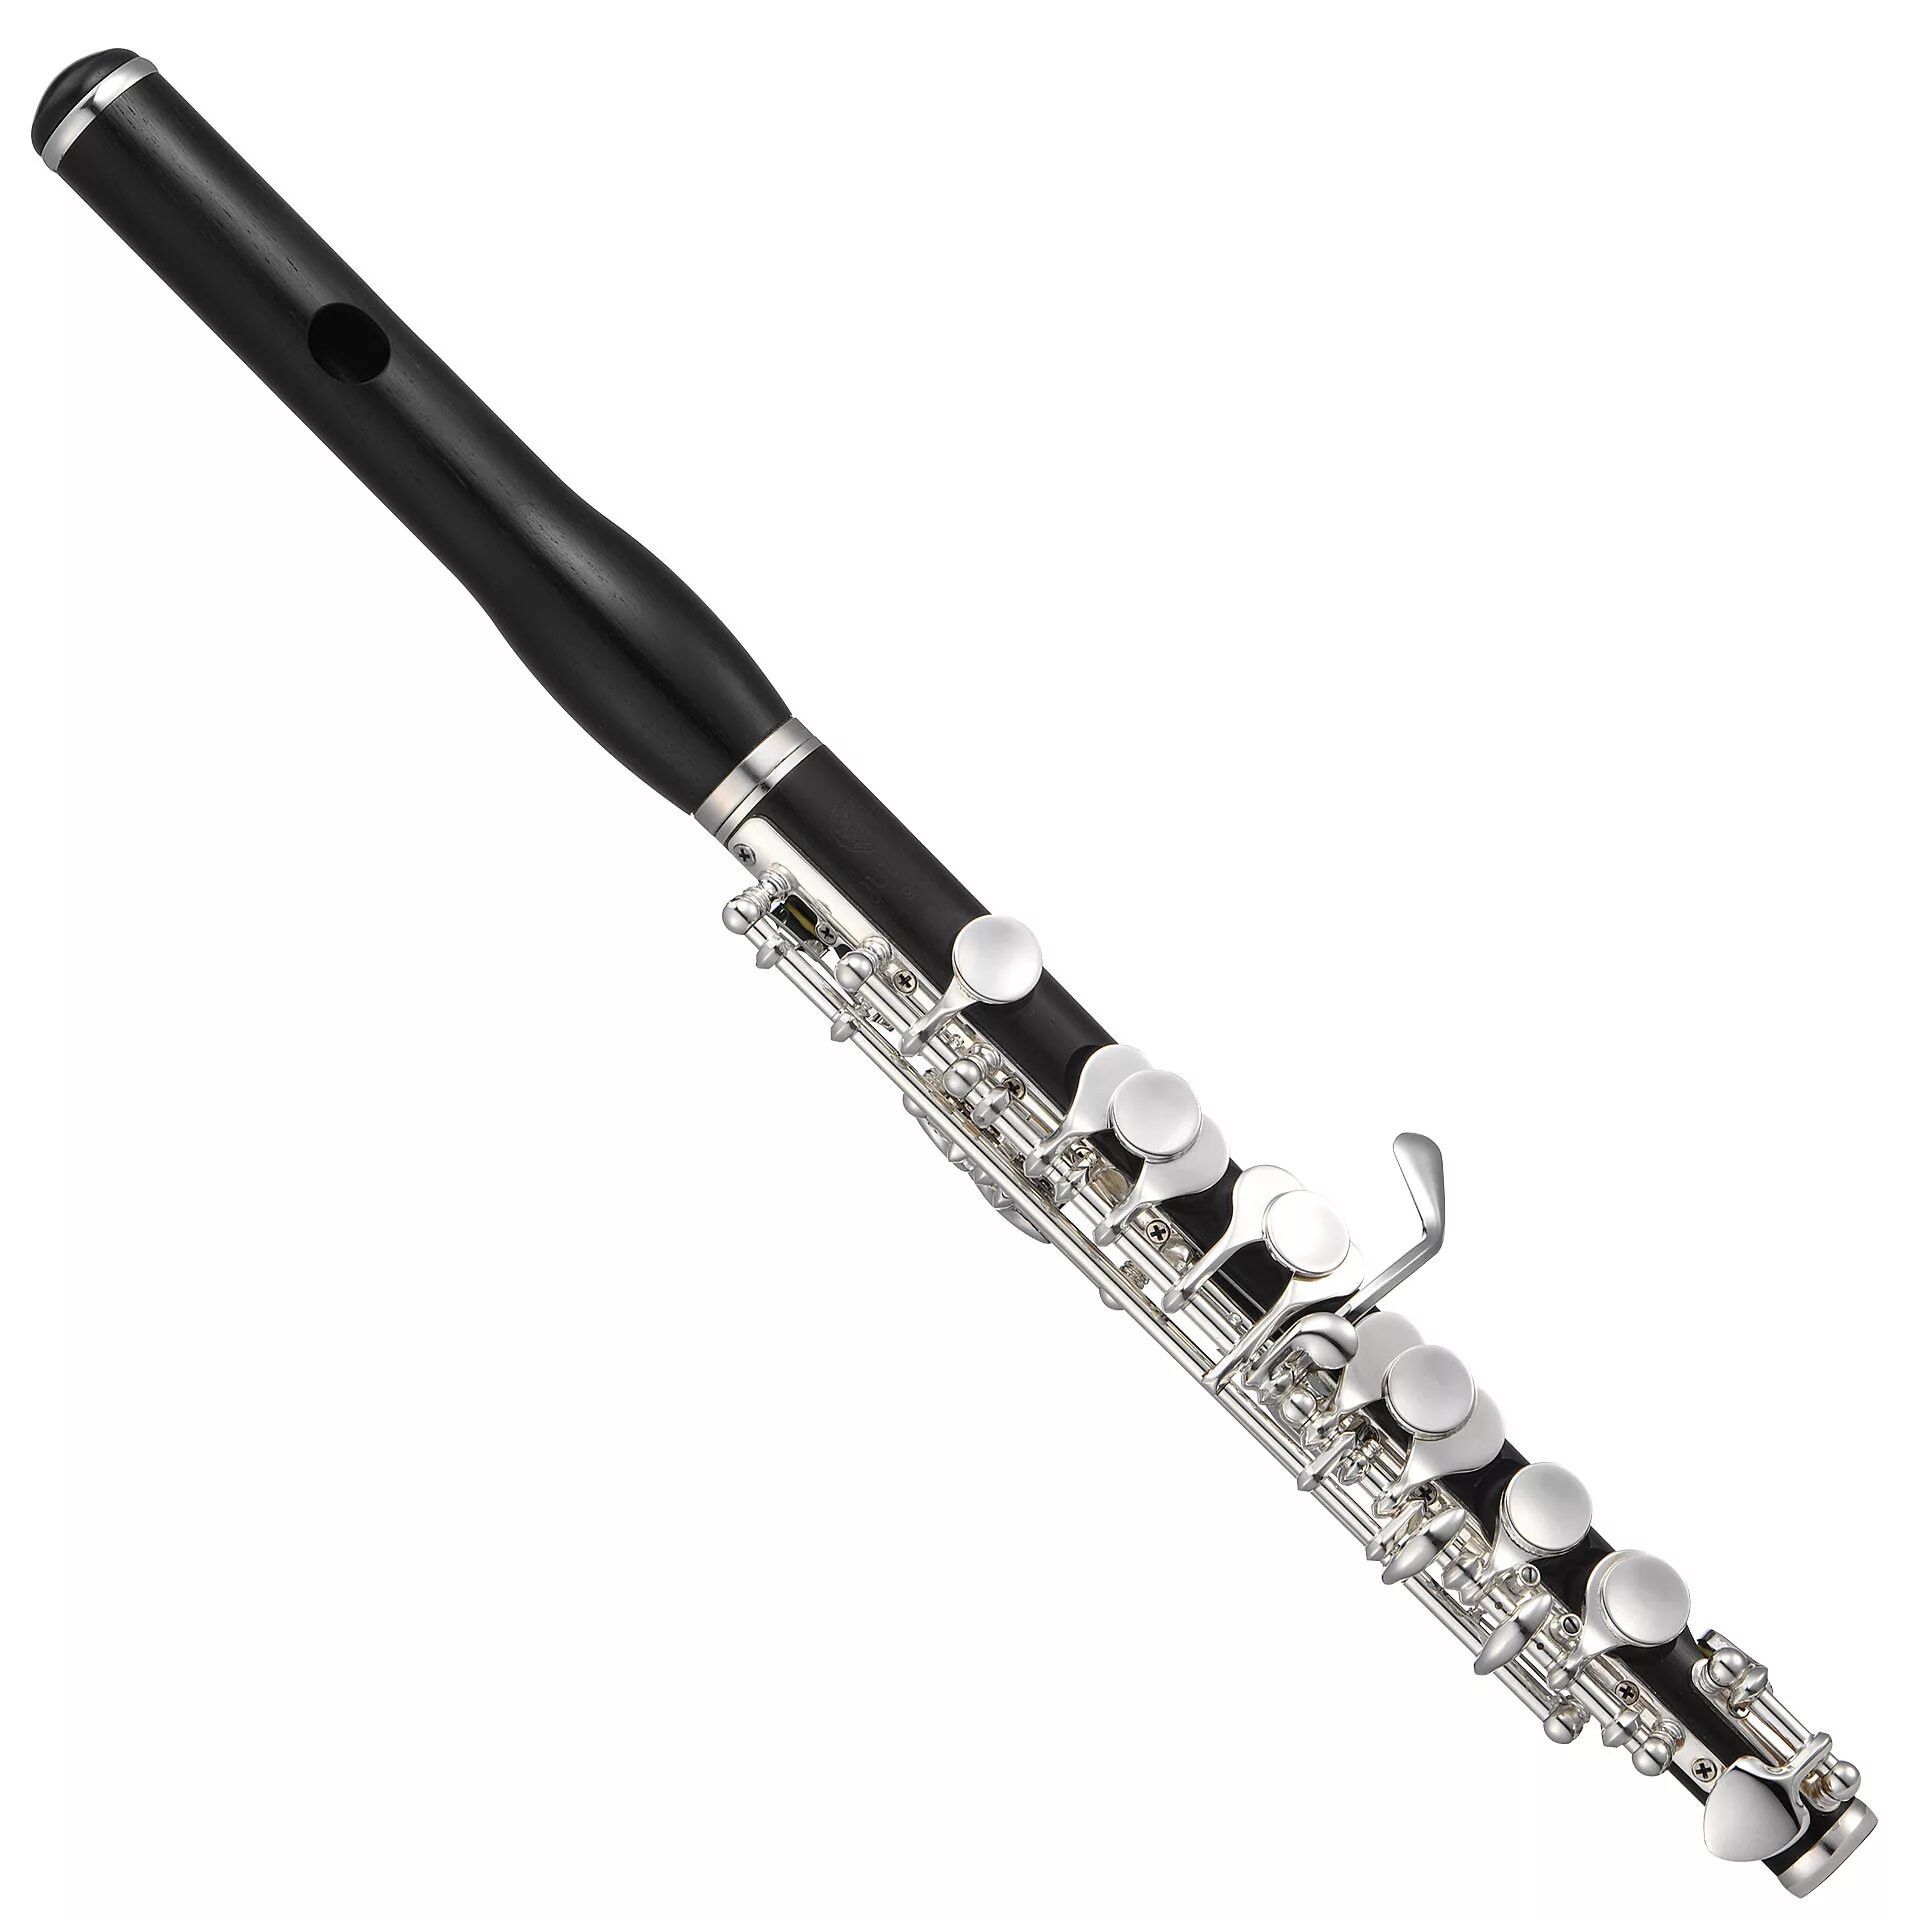 Flute. Флейта-Пикколо деревянный духовой музыкальный инструмент. Флейта Пикколо. Малая флейта Пикколо. Пикколо инструмент.